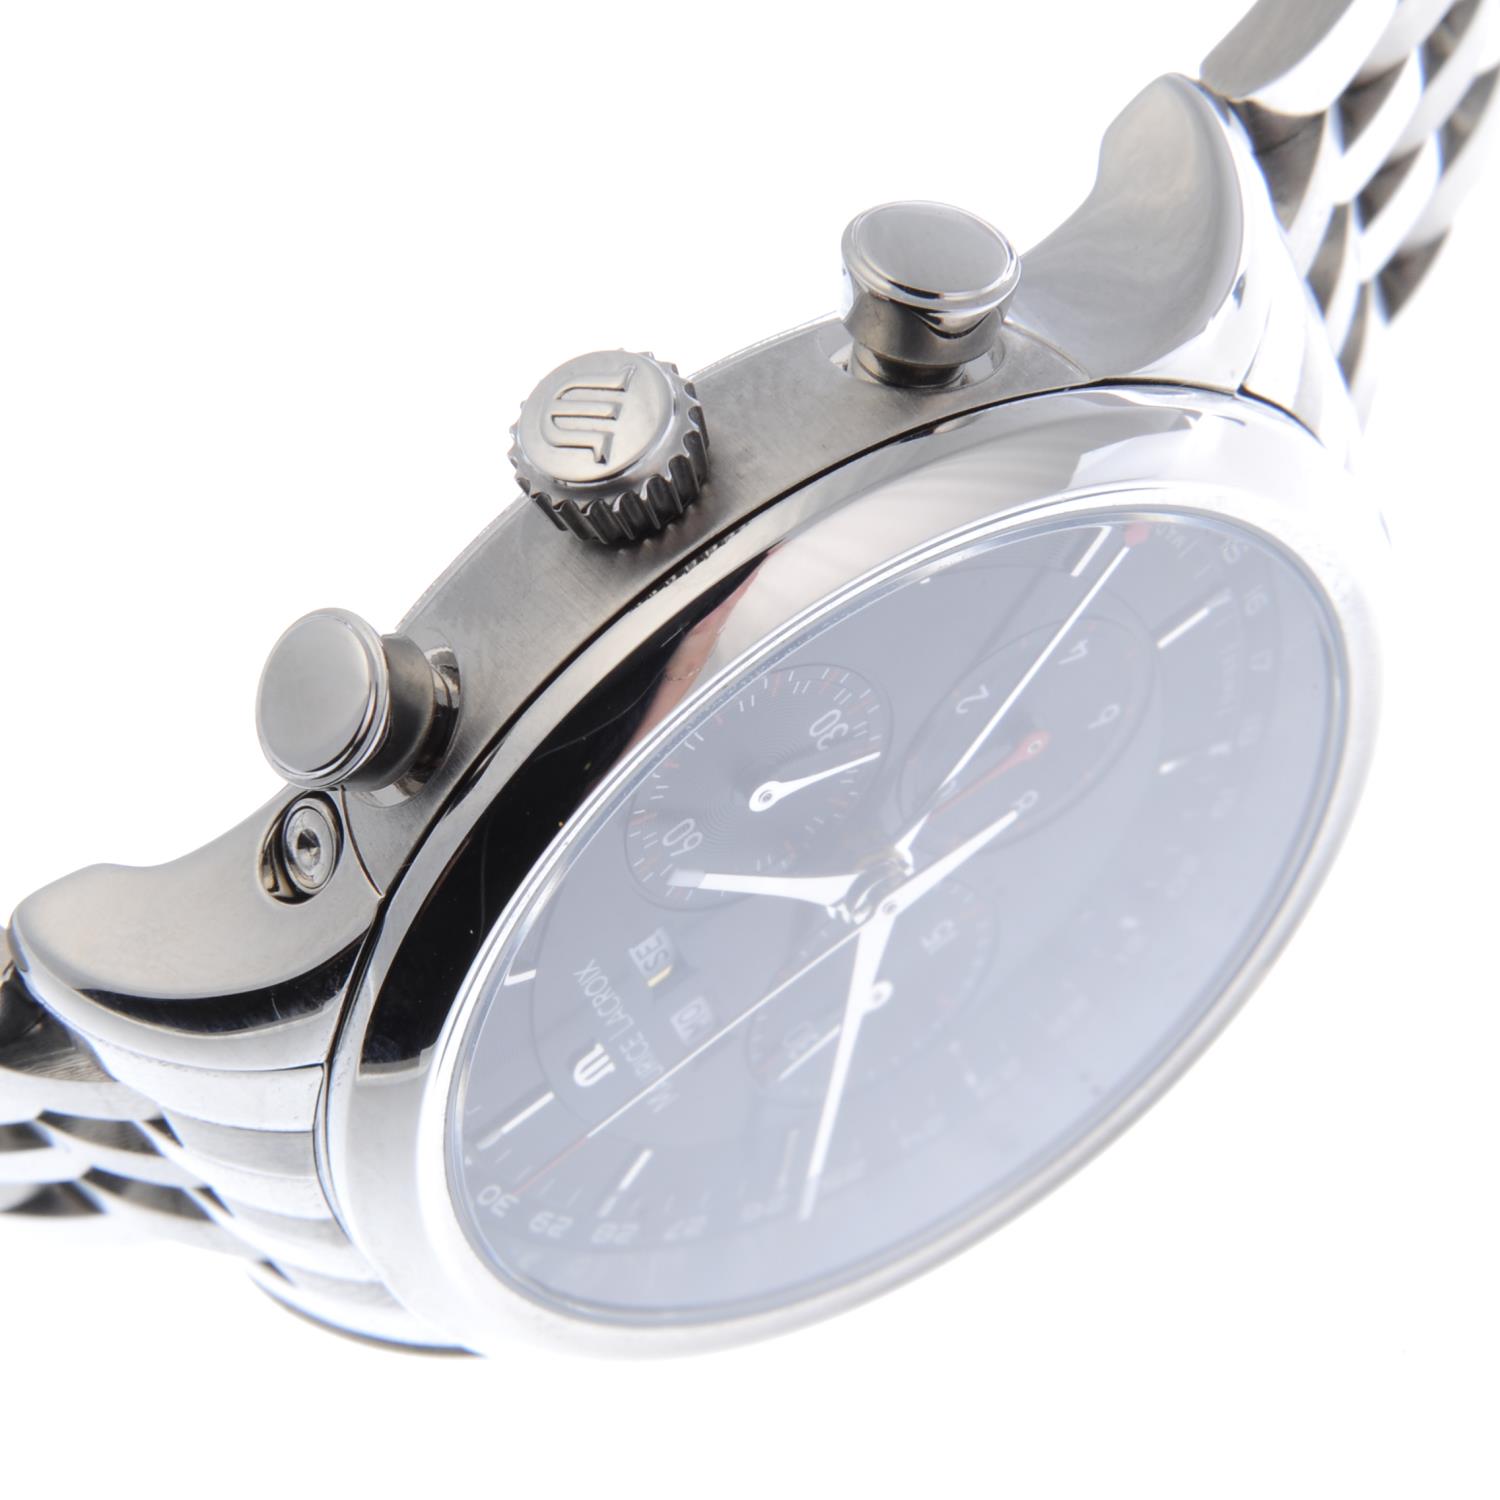 MAURICE LACROIX - a gentleman's Les Classiques triple-date chronograph bracelet watch. - Image 3 of 4